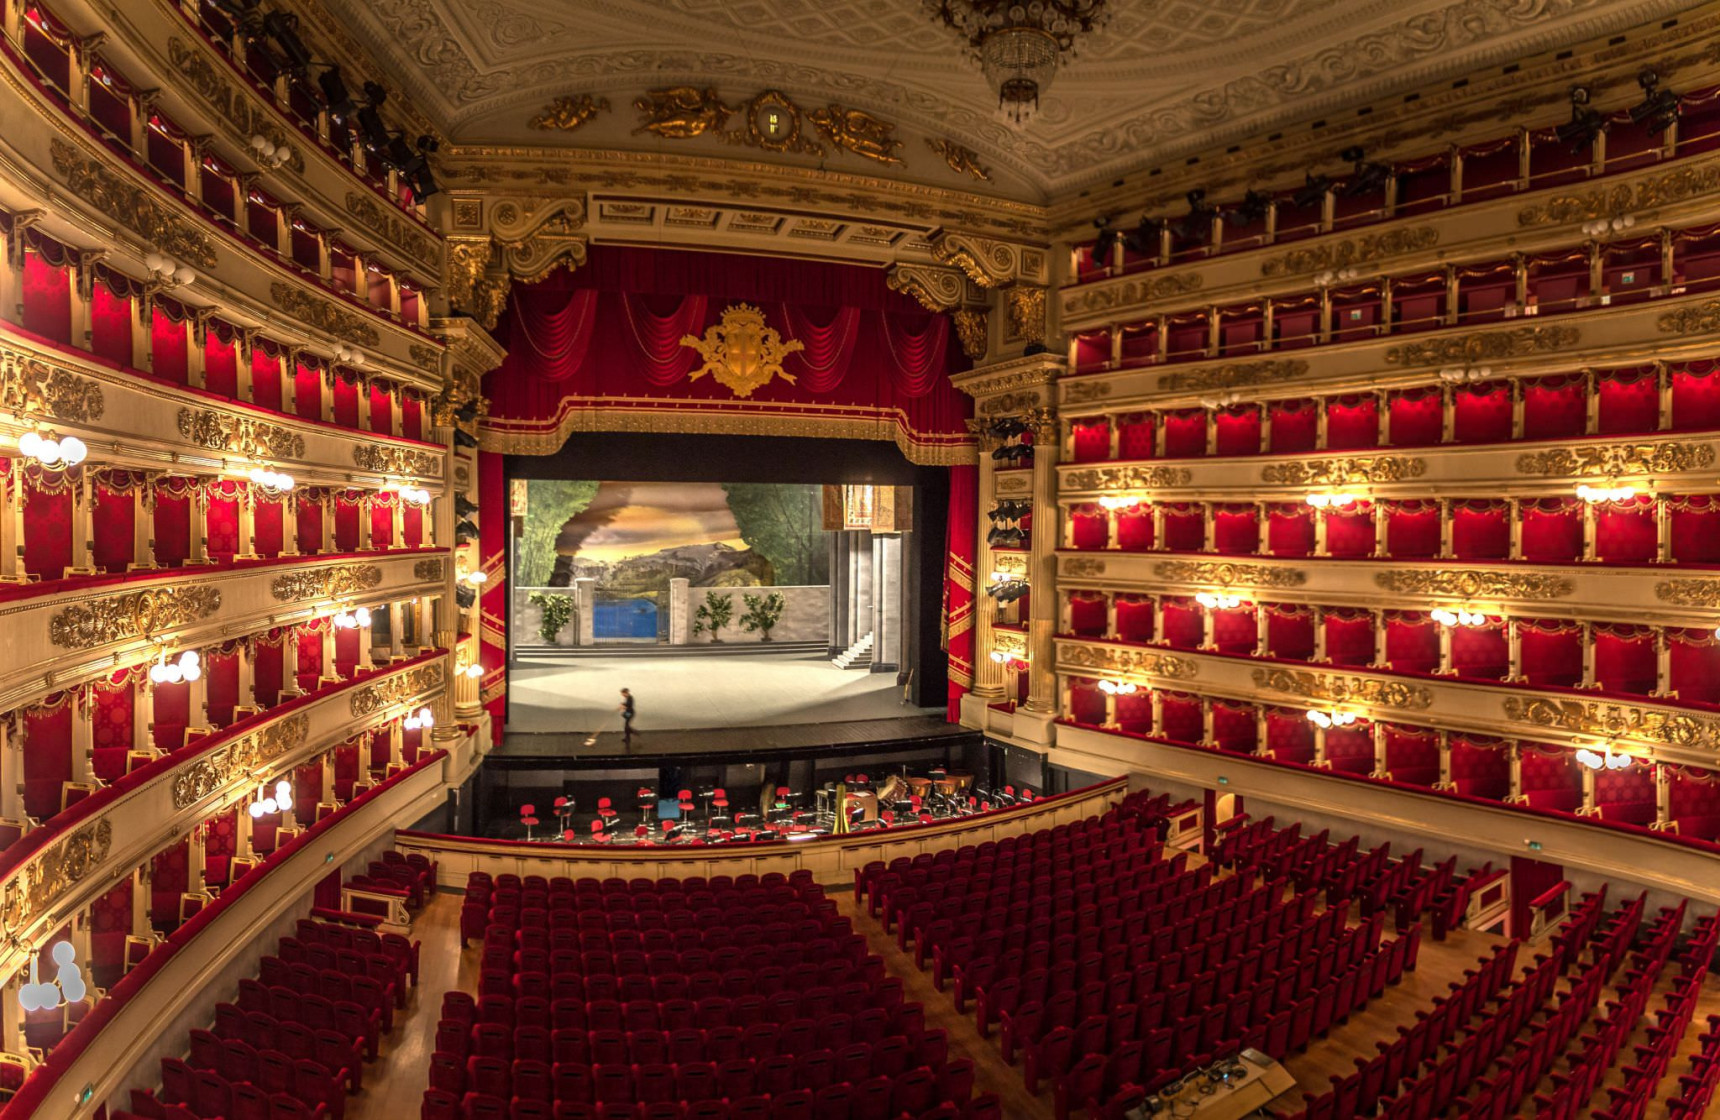 La Scala interior red and gold